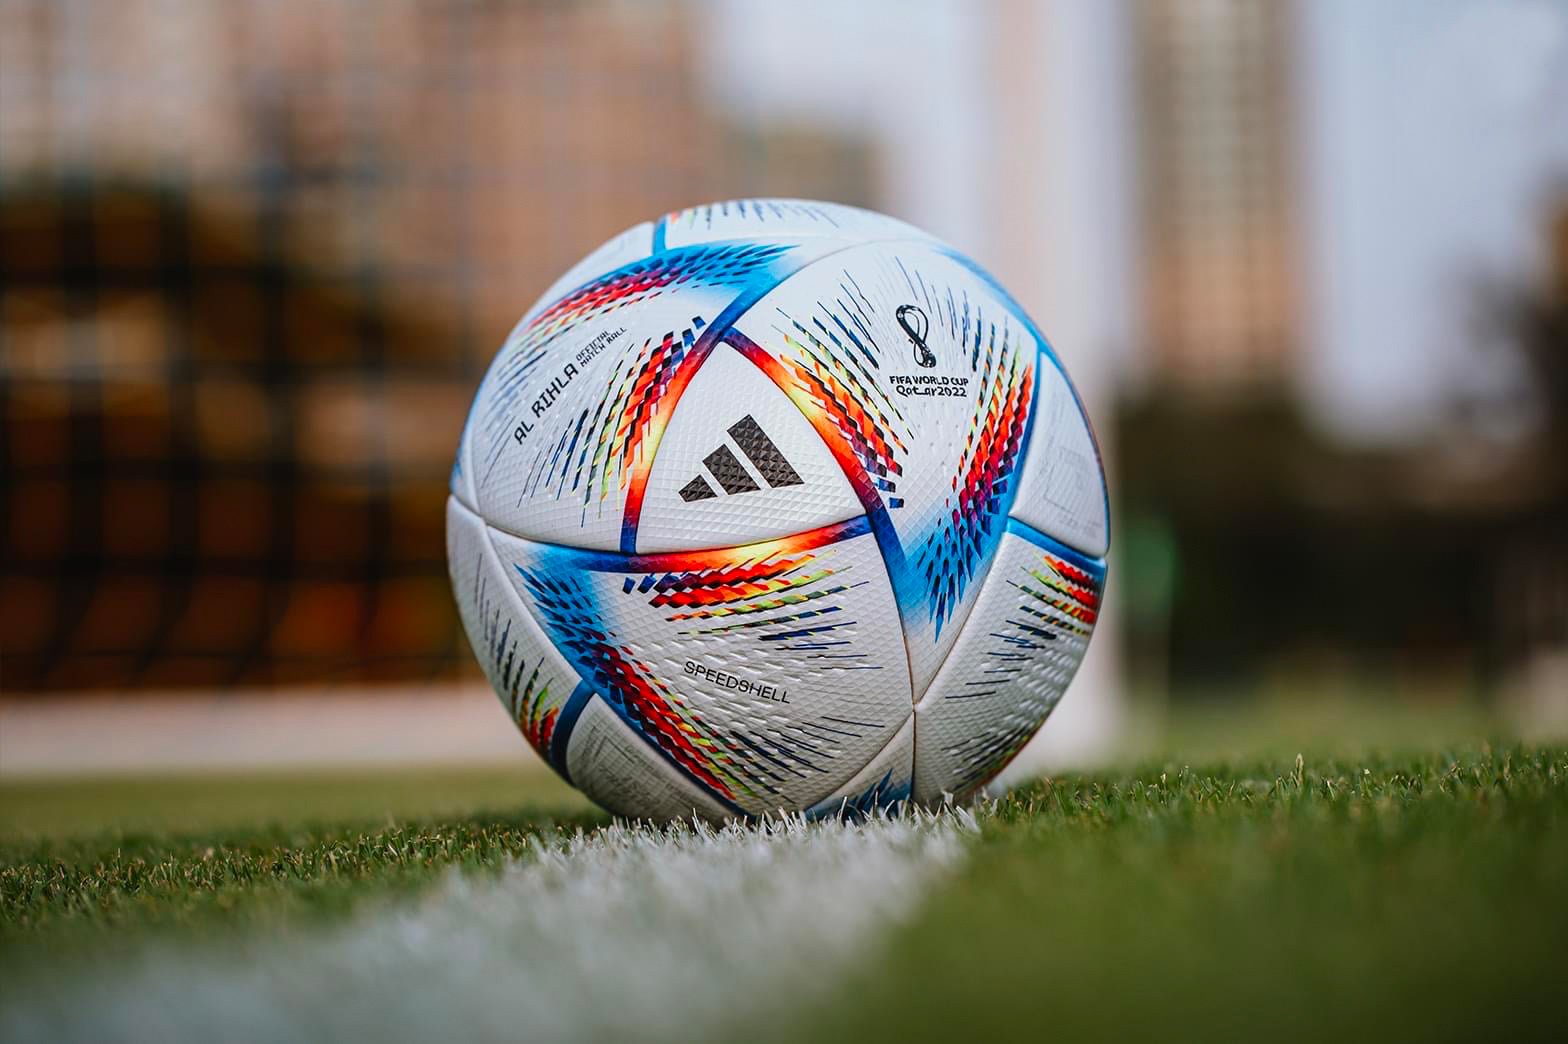 Giới thiệu bóng đá ‘Al Rihla’ chính thức cho mùa giải World Cup 2022